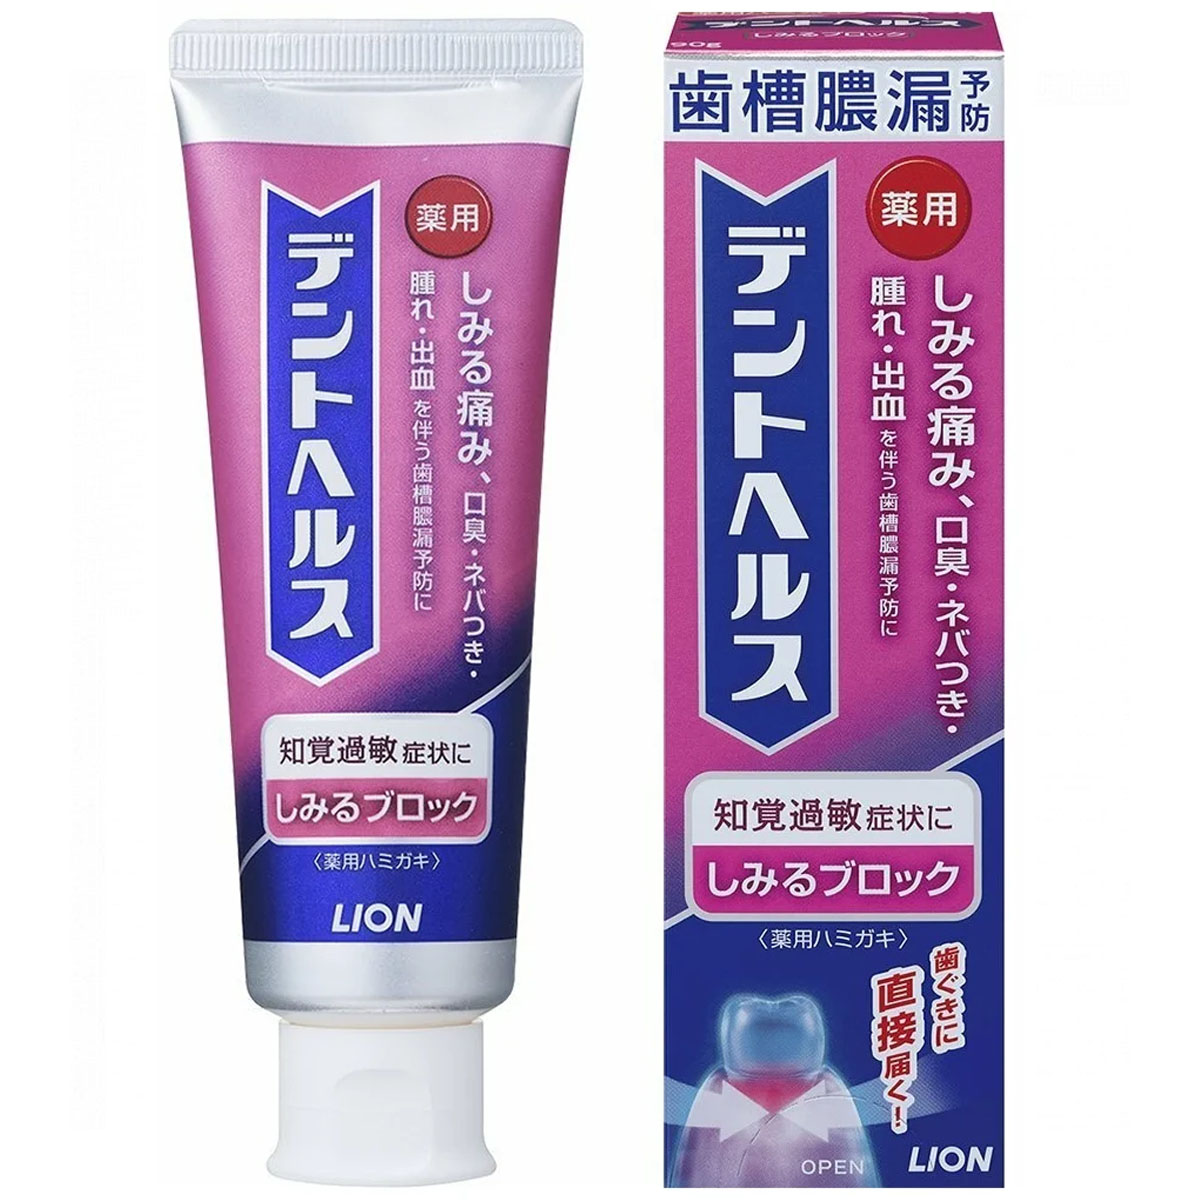 Зубная паста LION бизорюк органическая зубная паста против воспалений десен с маклюрой 50